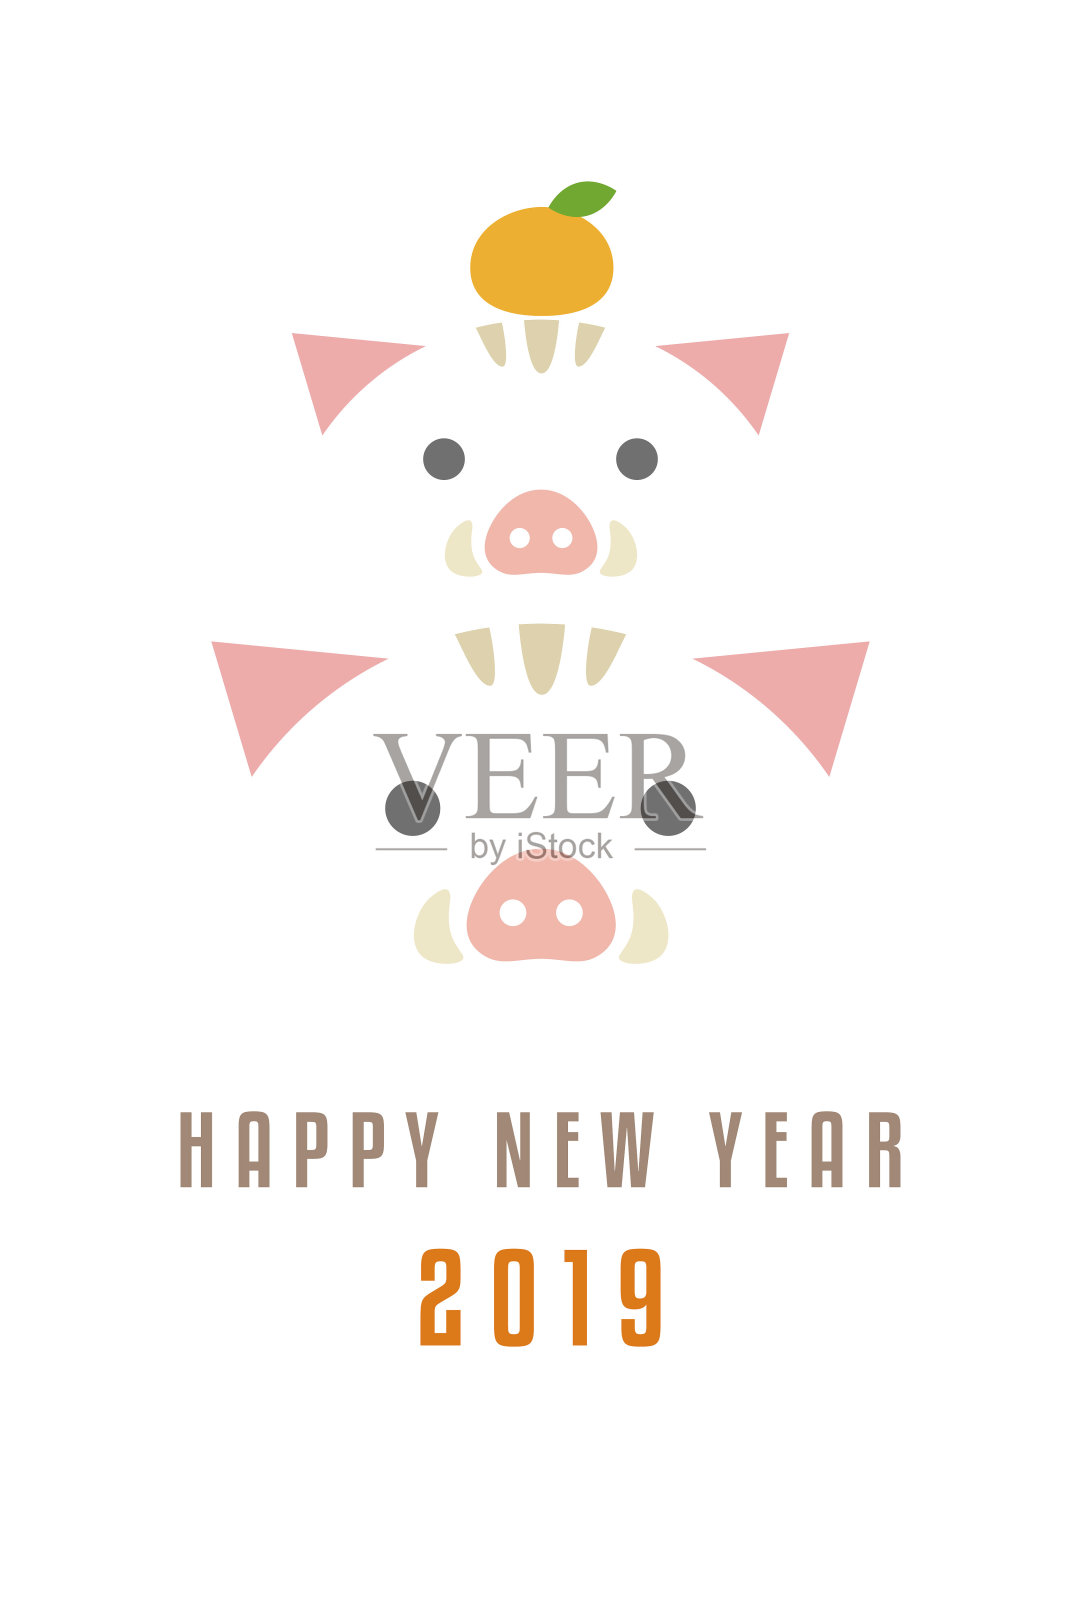 2019年的猪年新年卡片设计模板素材